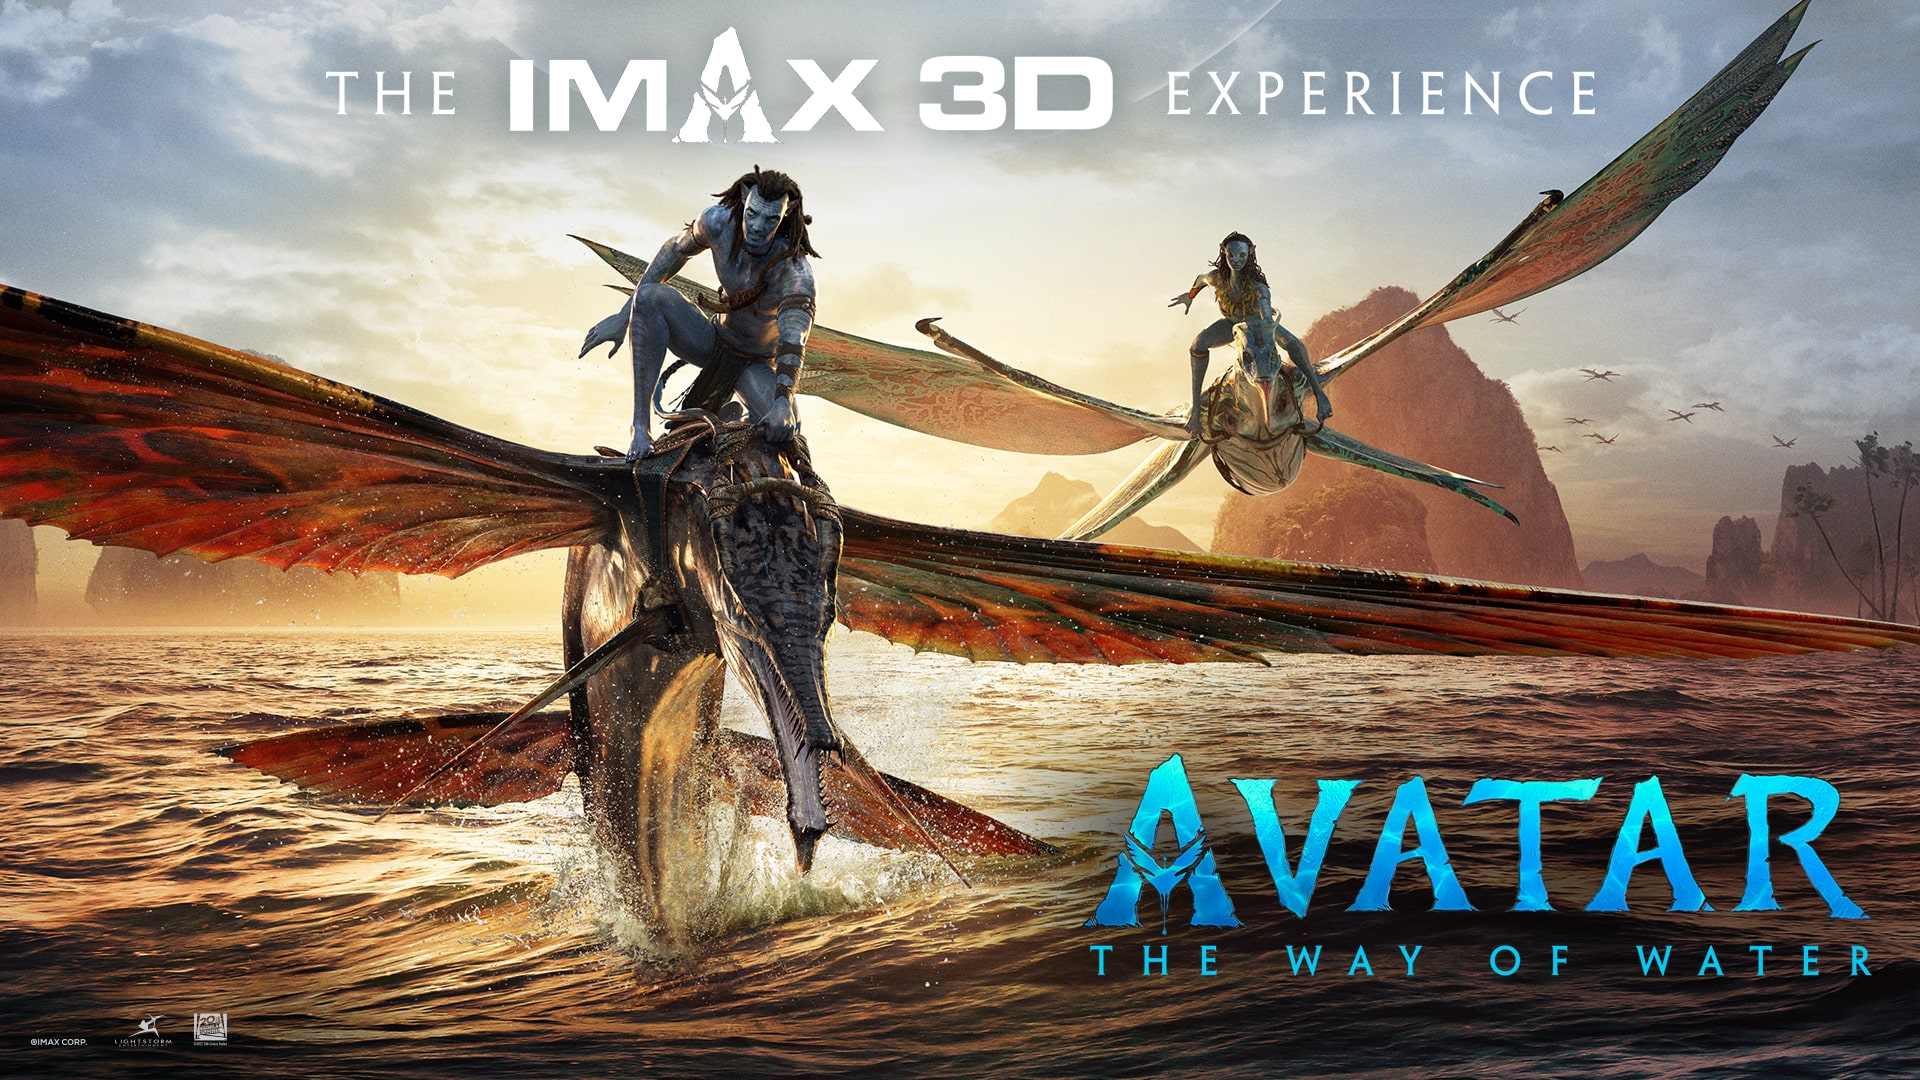 Định dạng đặc biệt của Avatar 2 sẽ mang tới cho bạn cảm giác như đang xem một bộ phim chân thực và sống động. Để có được những trải nghiệm tuyệt vời nhất, hãy đến và xem ngay hôm nay!